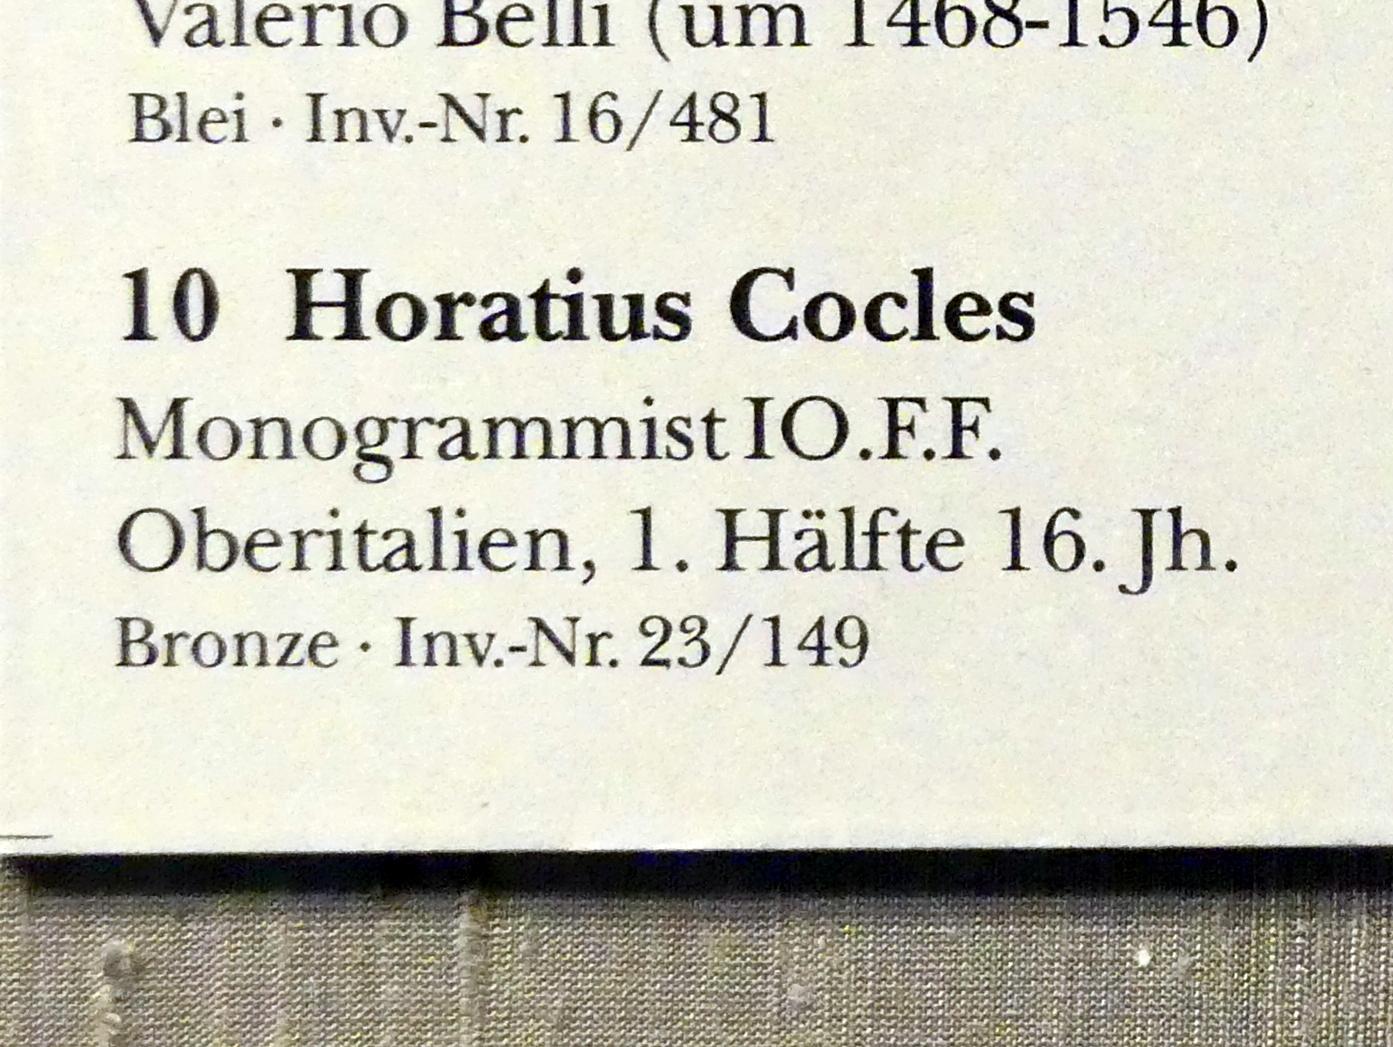 Monogrammist IO.F.F (1525), Horatius Cocles, München, Bayerisches Nationalmuseum, Saal 23, 1. Hälfte 16. Jhd., Bild 2/2